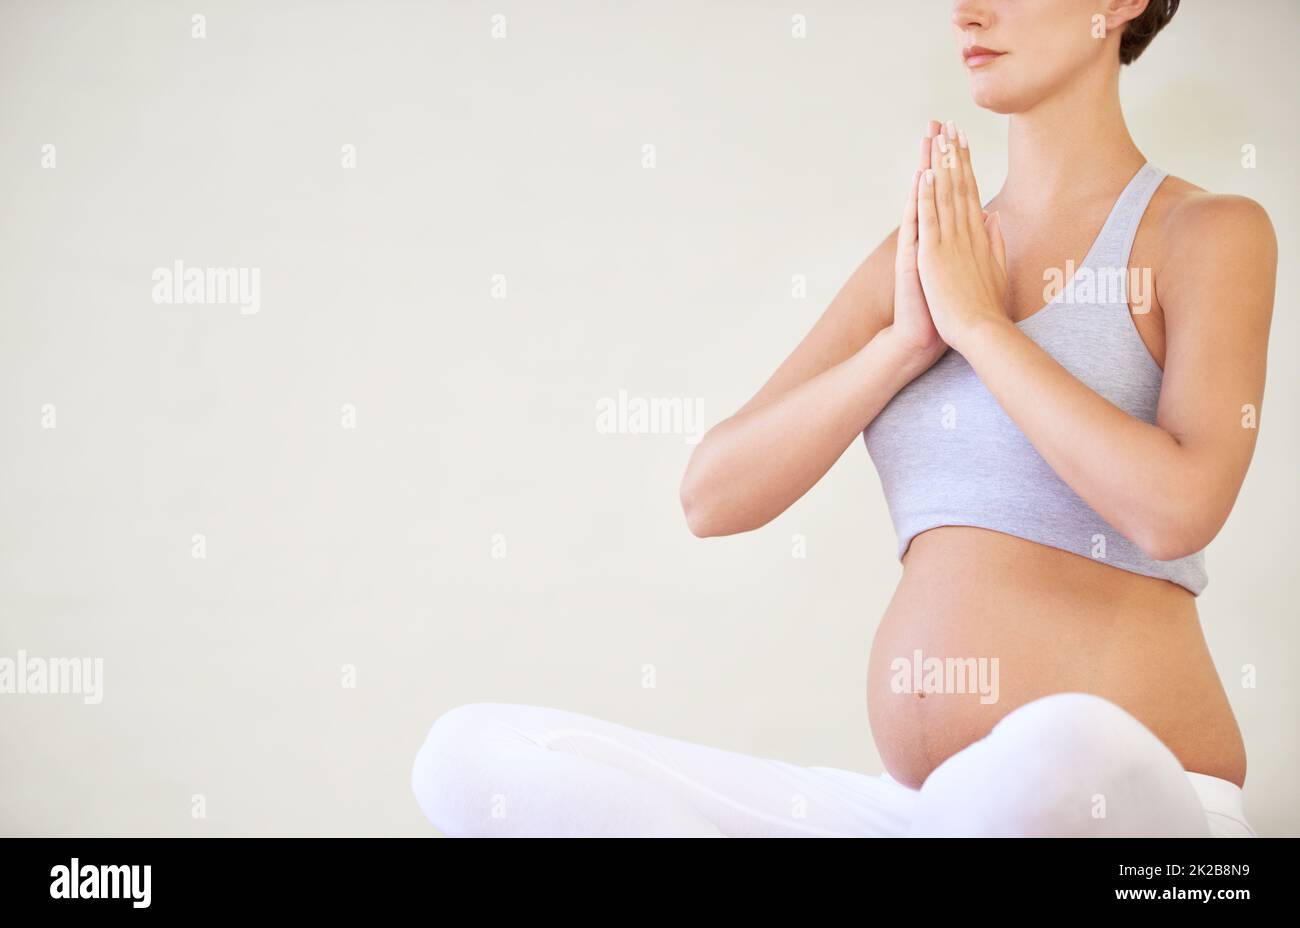 Halten Sie ihren Körper und Geist in guter Form für das Baby. Eine junge, schwanger sitzende Frau in einer Yoga-Pose - abgeschnitten. Stockfoto